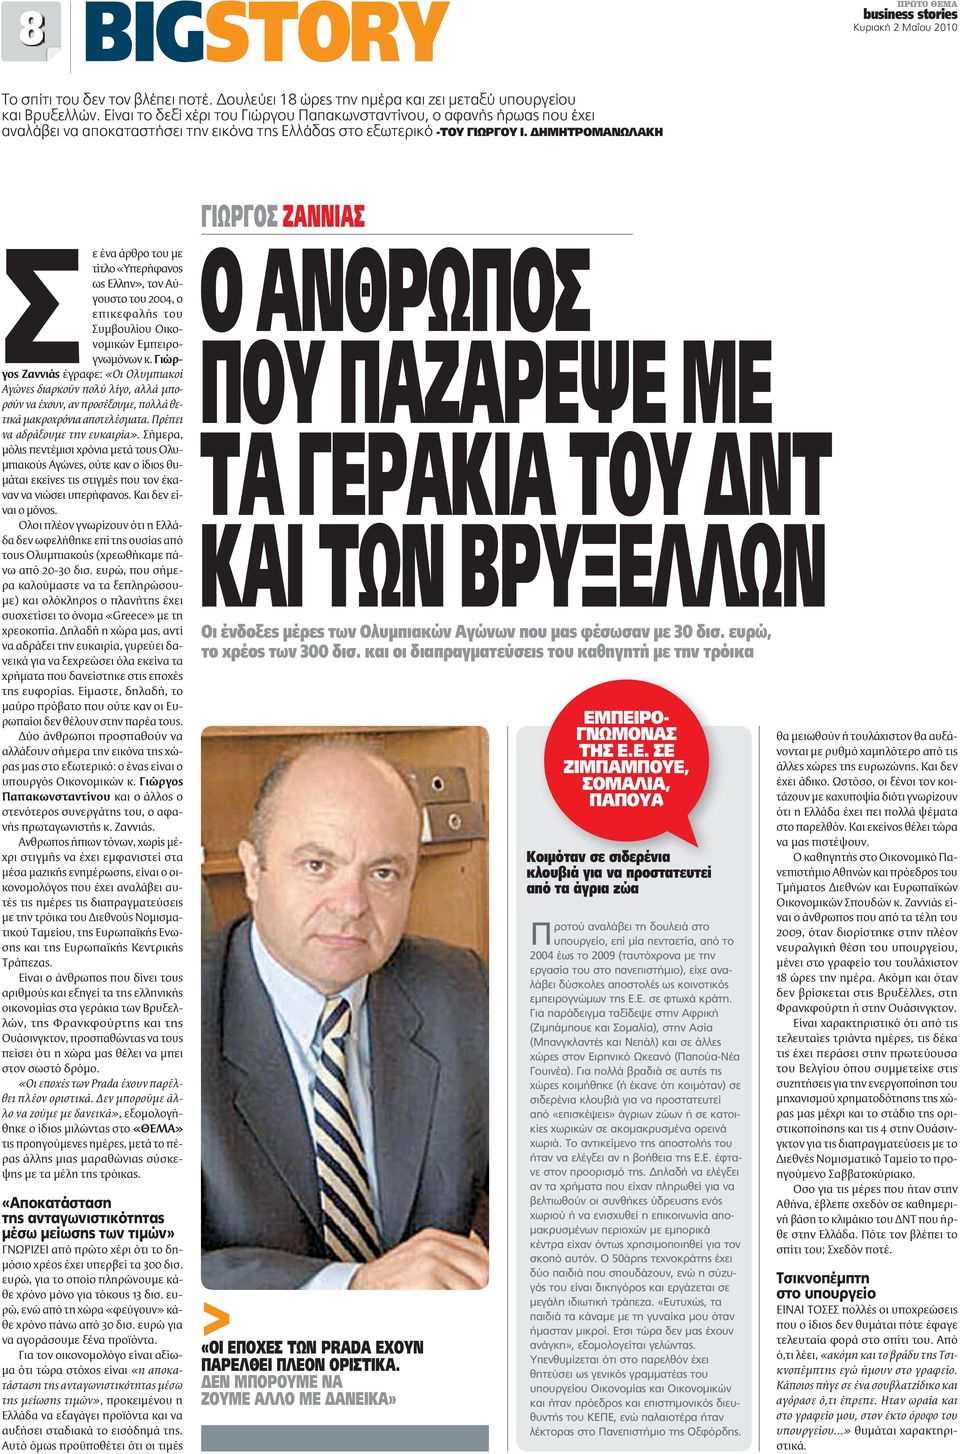 ΔΗΜΗΤΡΟΜΑΝΩΛΑΚΗ Σε ένα άρθρο του με τίτλο «Υπερήφανος ως Ελλην», τον Αύγουστο του 2004, ο επικεφαλής του Συμβουλίου Οικονομικών Εμπειρογνωμόνων κ.